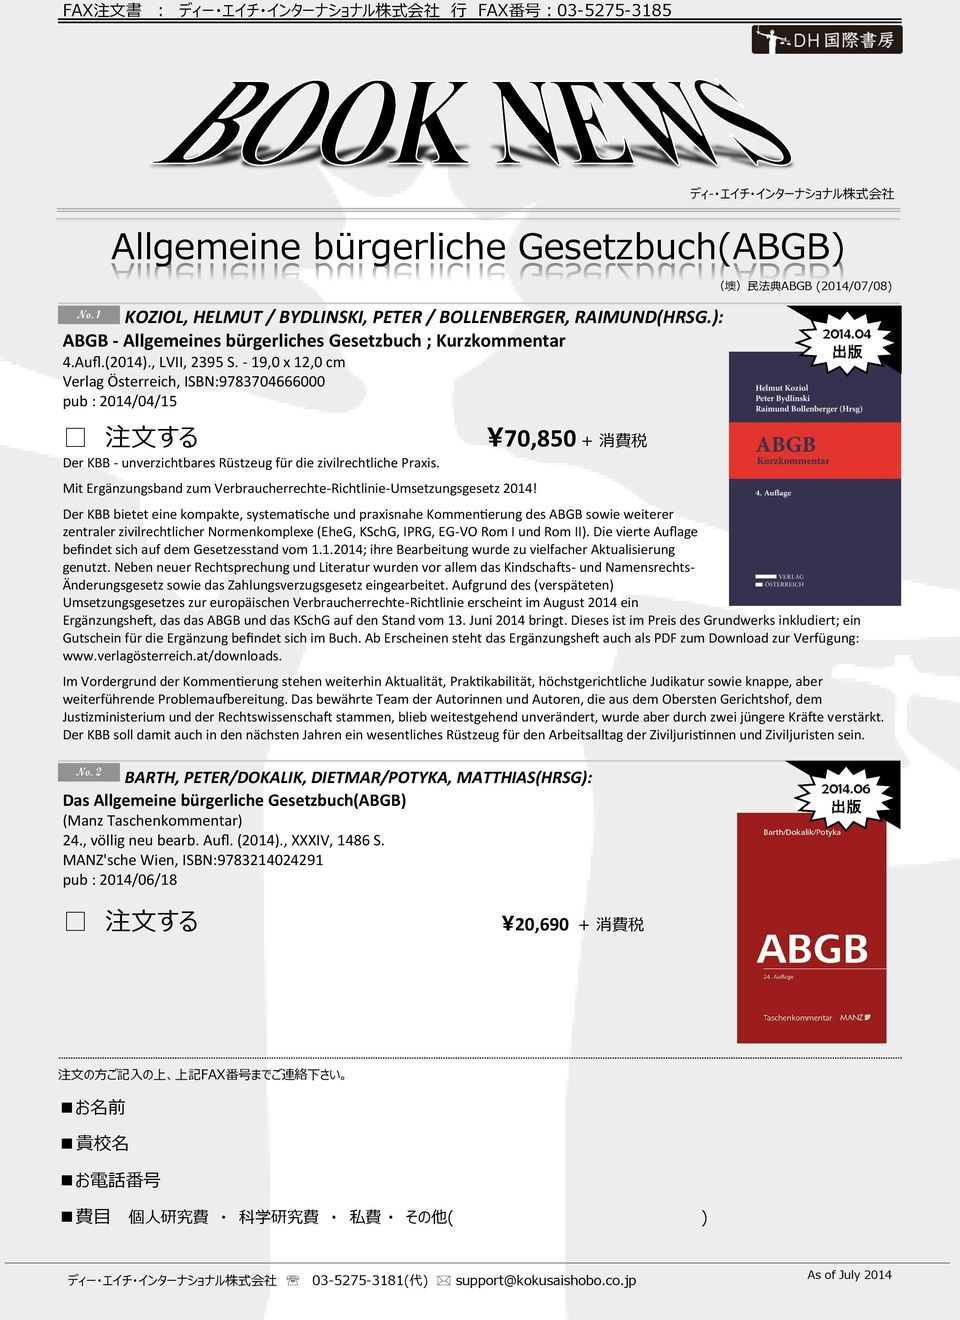 Mit Ergänzungsband zum Verbraucherrechte-Richtlinie-Umsetzungsgesetz 2014! \ 70,850 + 消 費 税 ディ- エイチ インターナショナル 株 式 会 社 Allgemeine bürgerliche Gesetzbuch(ABGB) ( 墺 ) 民 法 典 ABGB (2014/07/08) 2014.